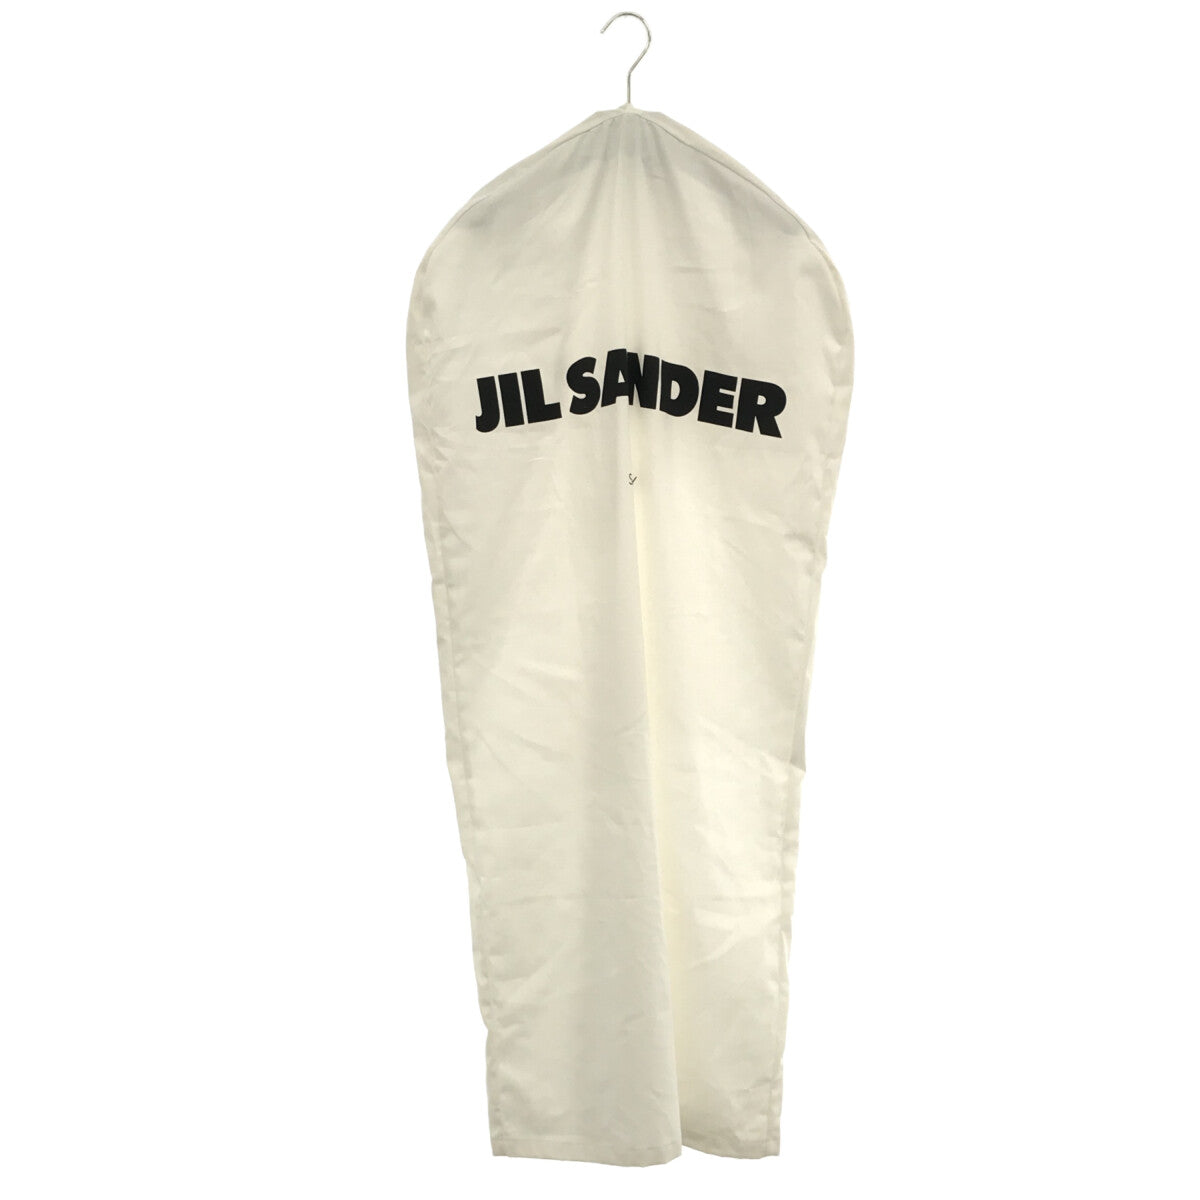 JIL SANDER / ジルサンダー | 7Days Shirt SATURDAY バンドカラー プル 